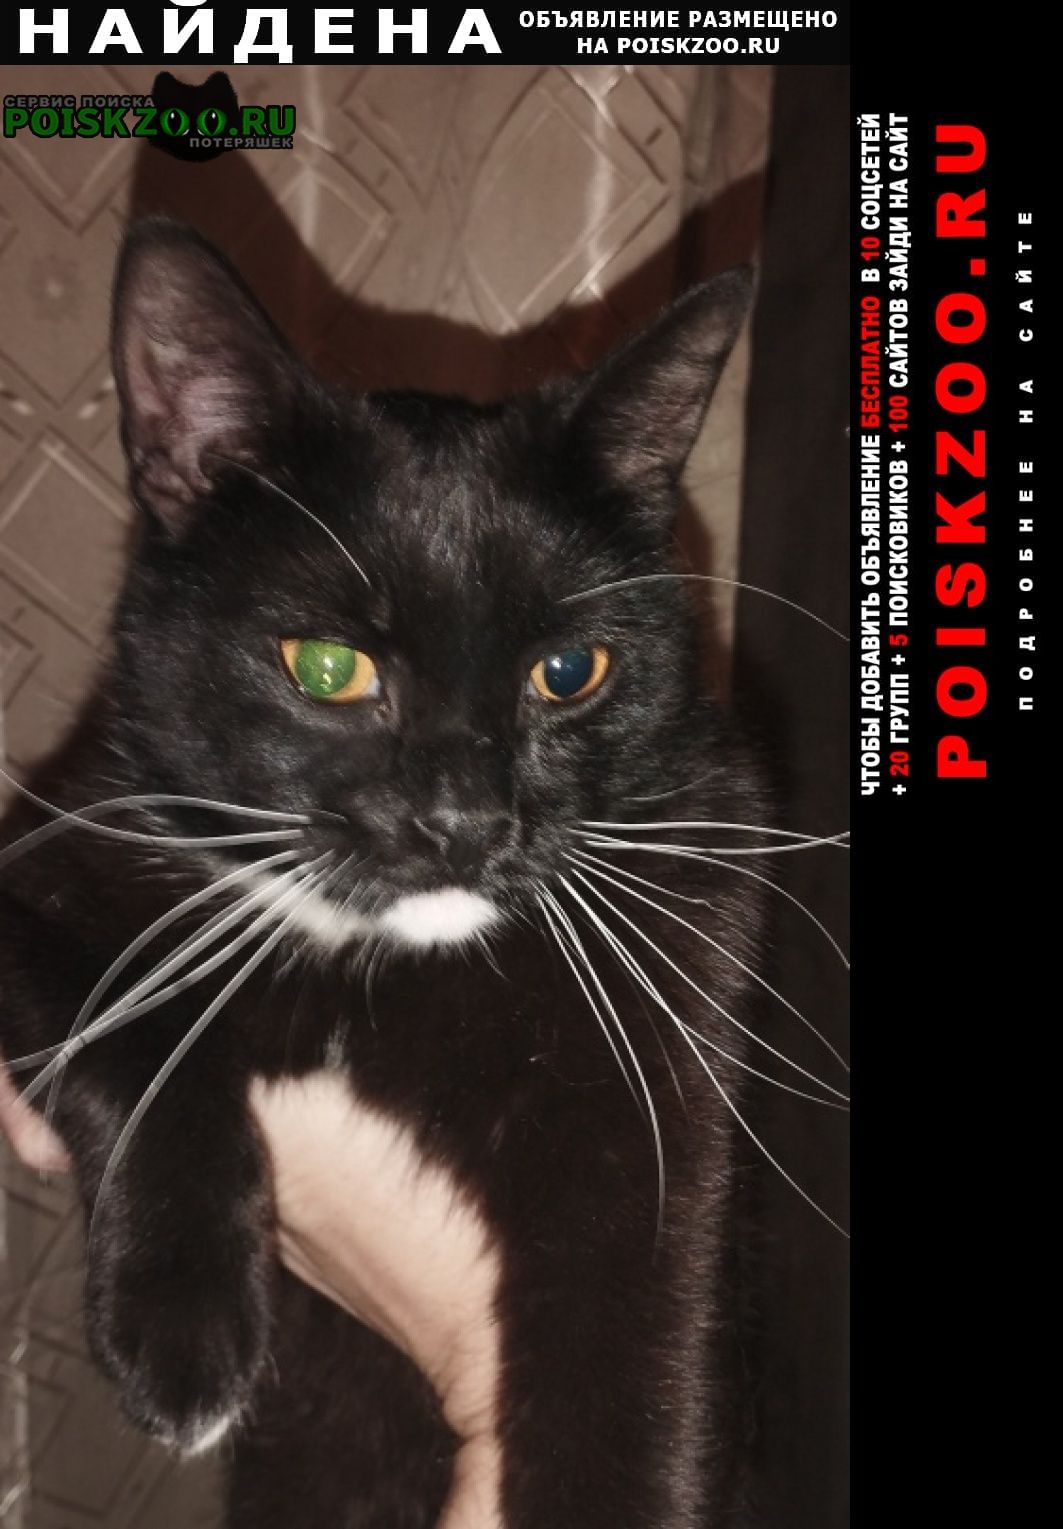 Найден кот черный кот щёлковская 9 парковая Москва